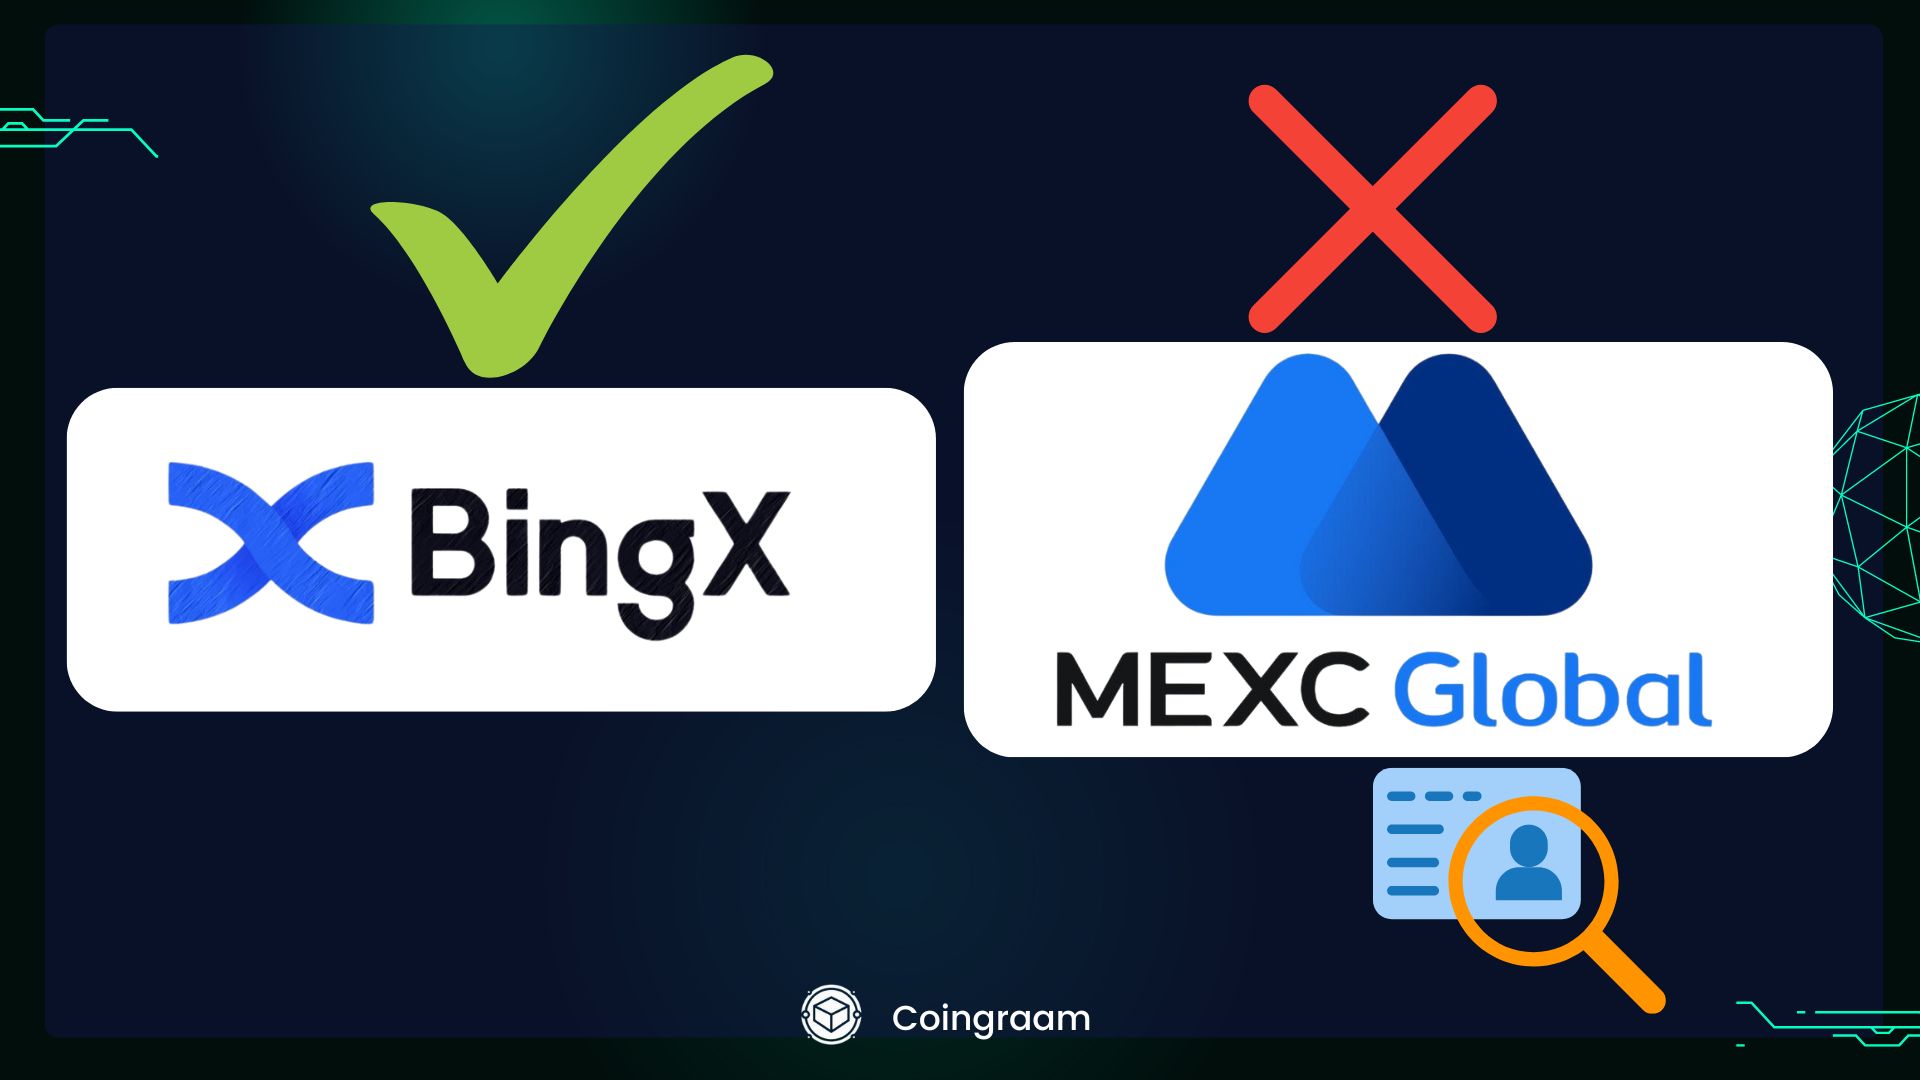 احراز هویت برای کاربران صرافی MEXC اجباری شد; معرفی صرافی جایگزین با هدیه ویژه برای اعضای کوینگرام